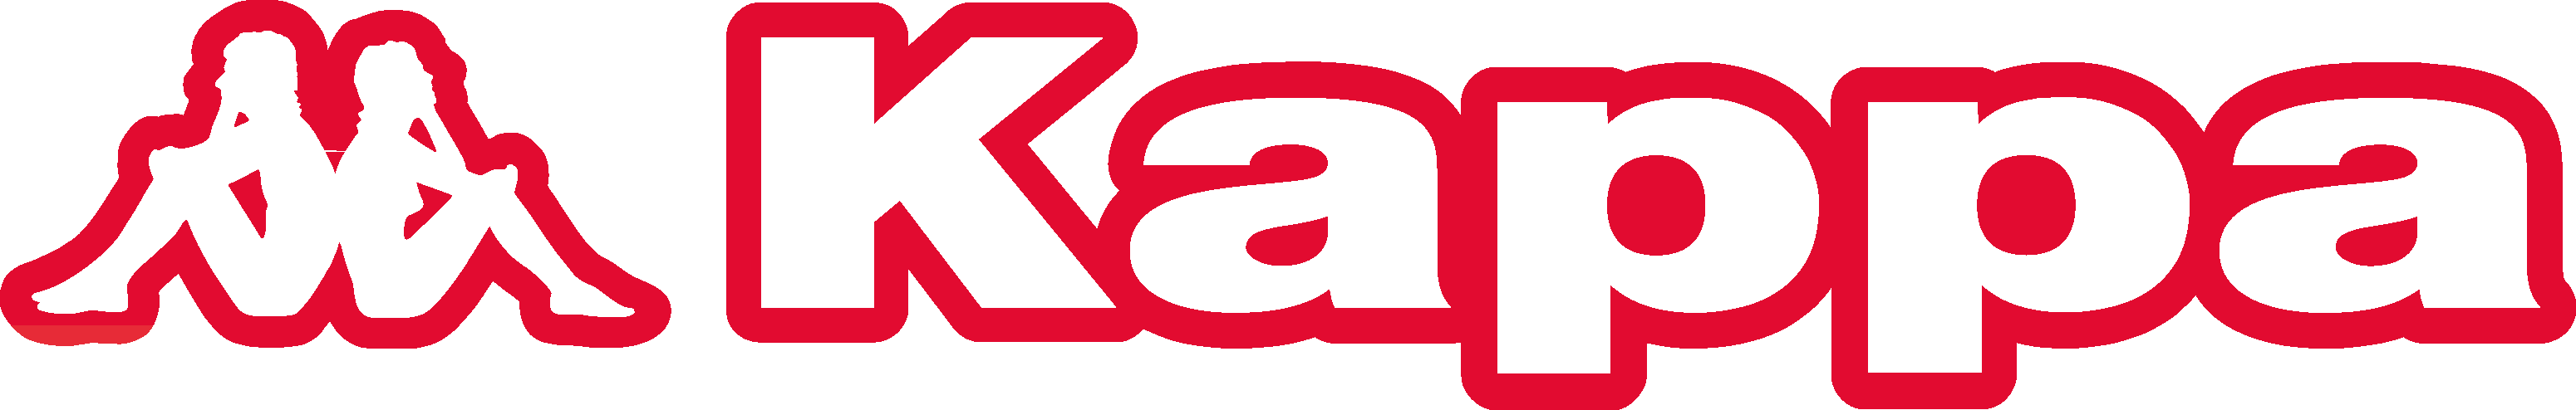 Kappa Logo - PNG Logo Vector Downloads (SVG, EPS)